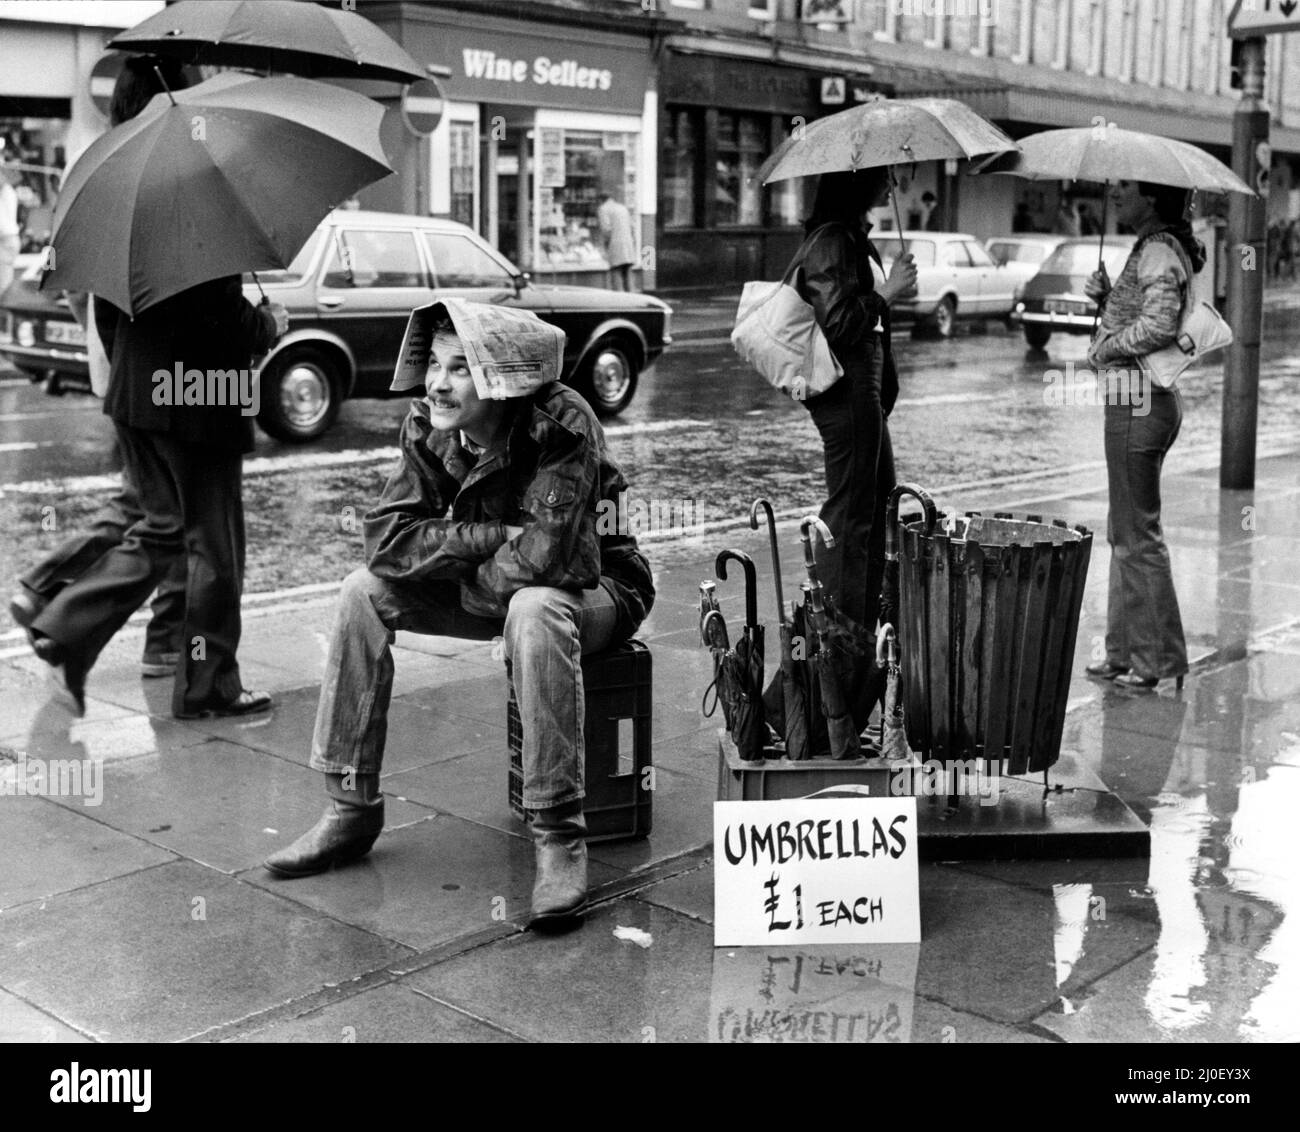 Ein Bild aus einer Serie humorvoller Neuheitenbilder, aufgenommen vom Sunday People-Fotografen Dennis Hutchinson. Ein Straßenhändler verkauft Regenschirme bei Regen. Er benutzte eine Zeitung anstelle eines Regenschirms für sich selbst. Circa: 1978 Stockfoto